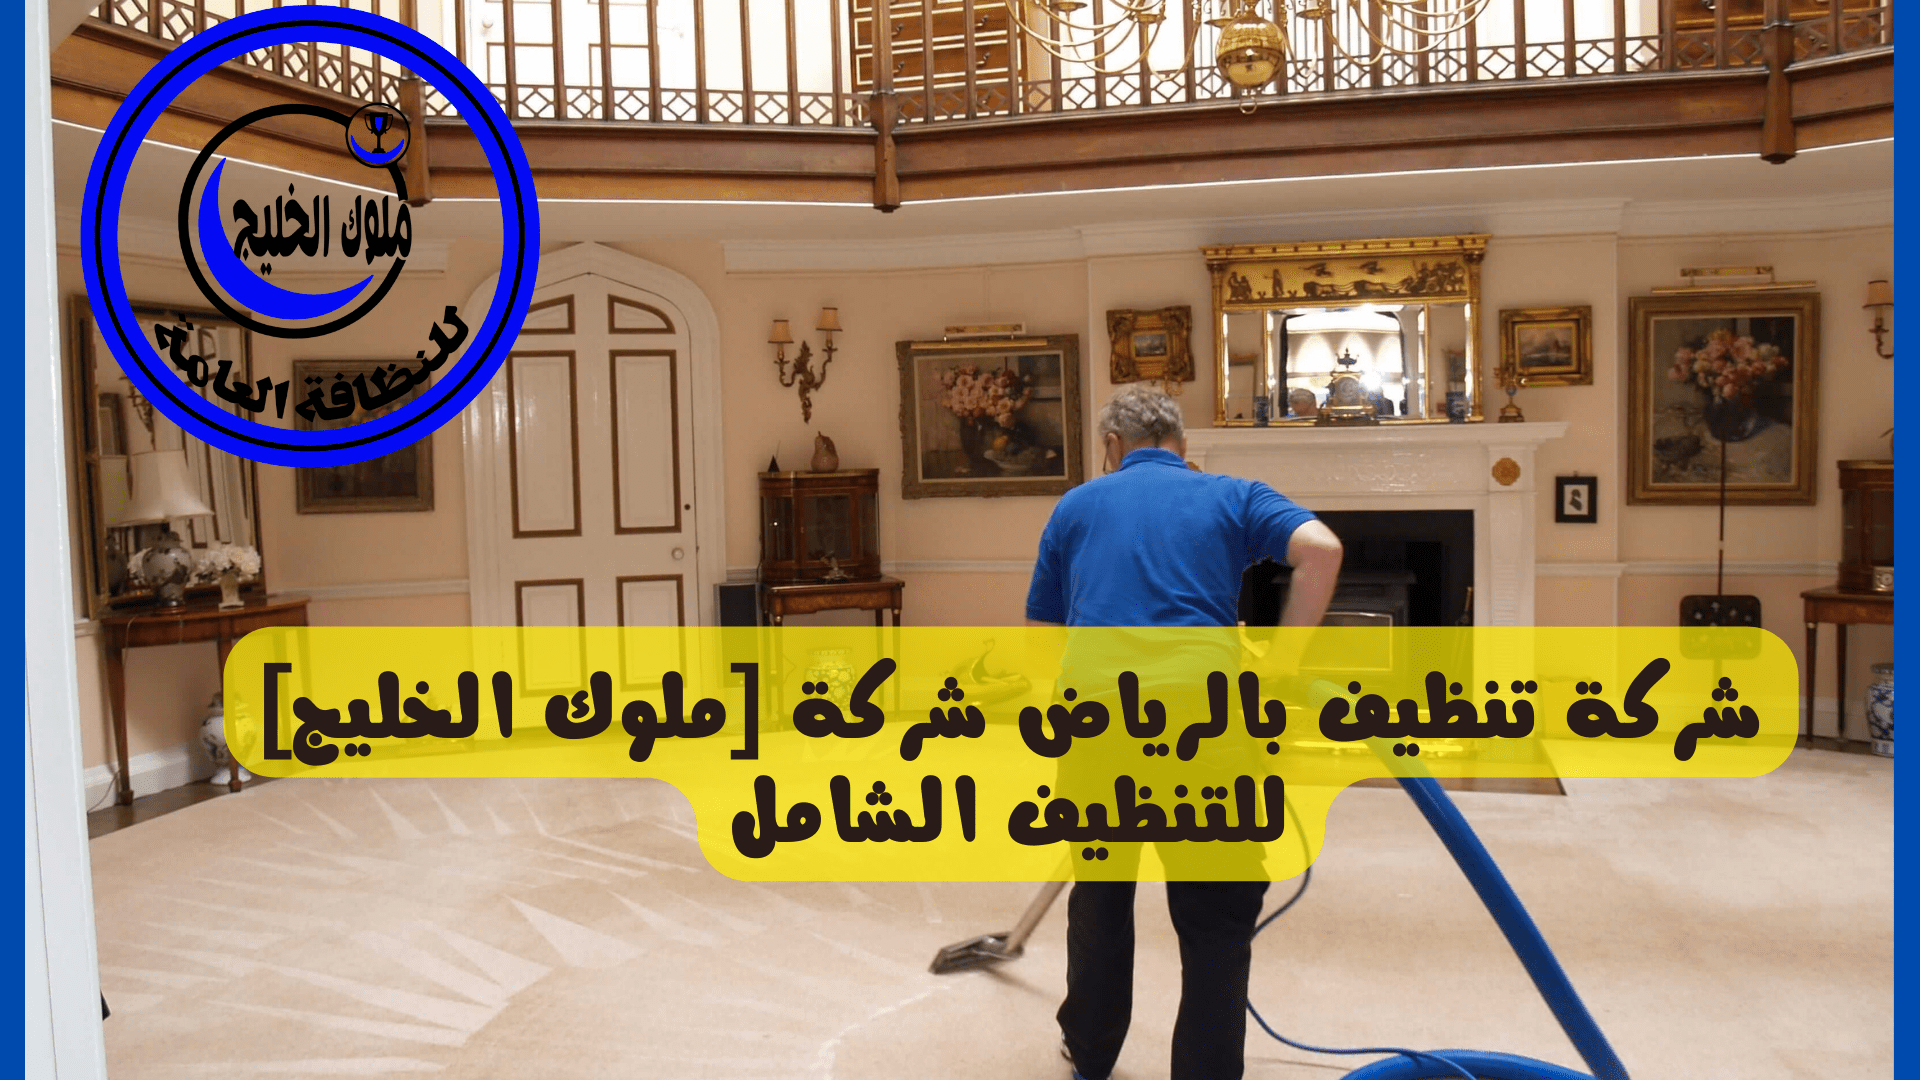 تنظيف بالرياض شركة ملوك الخليج للتنظيف الشامل